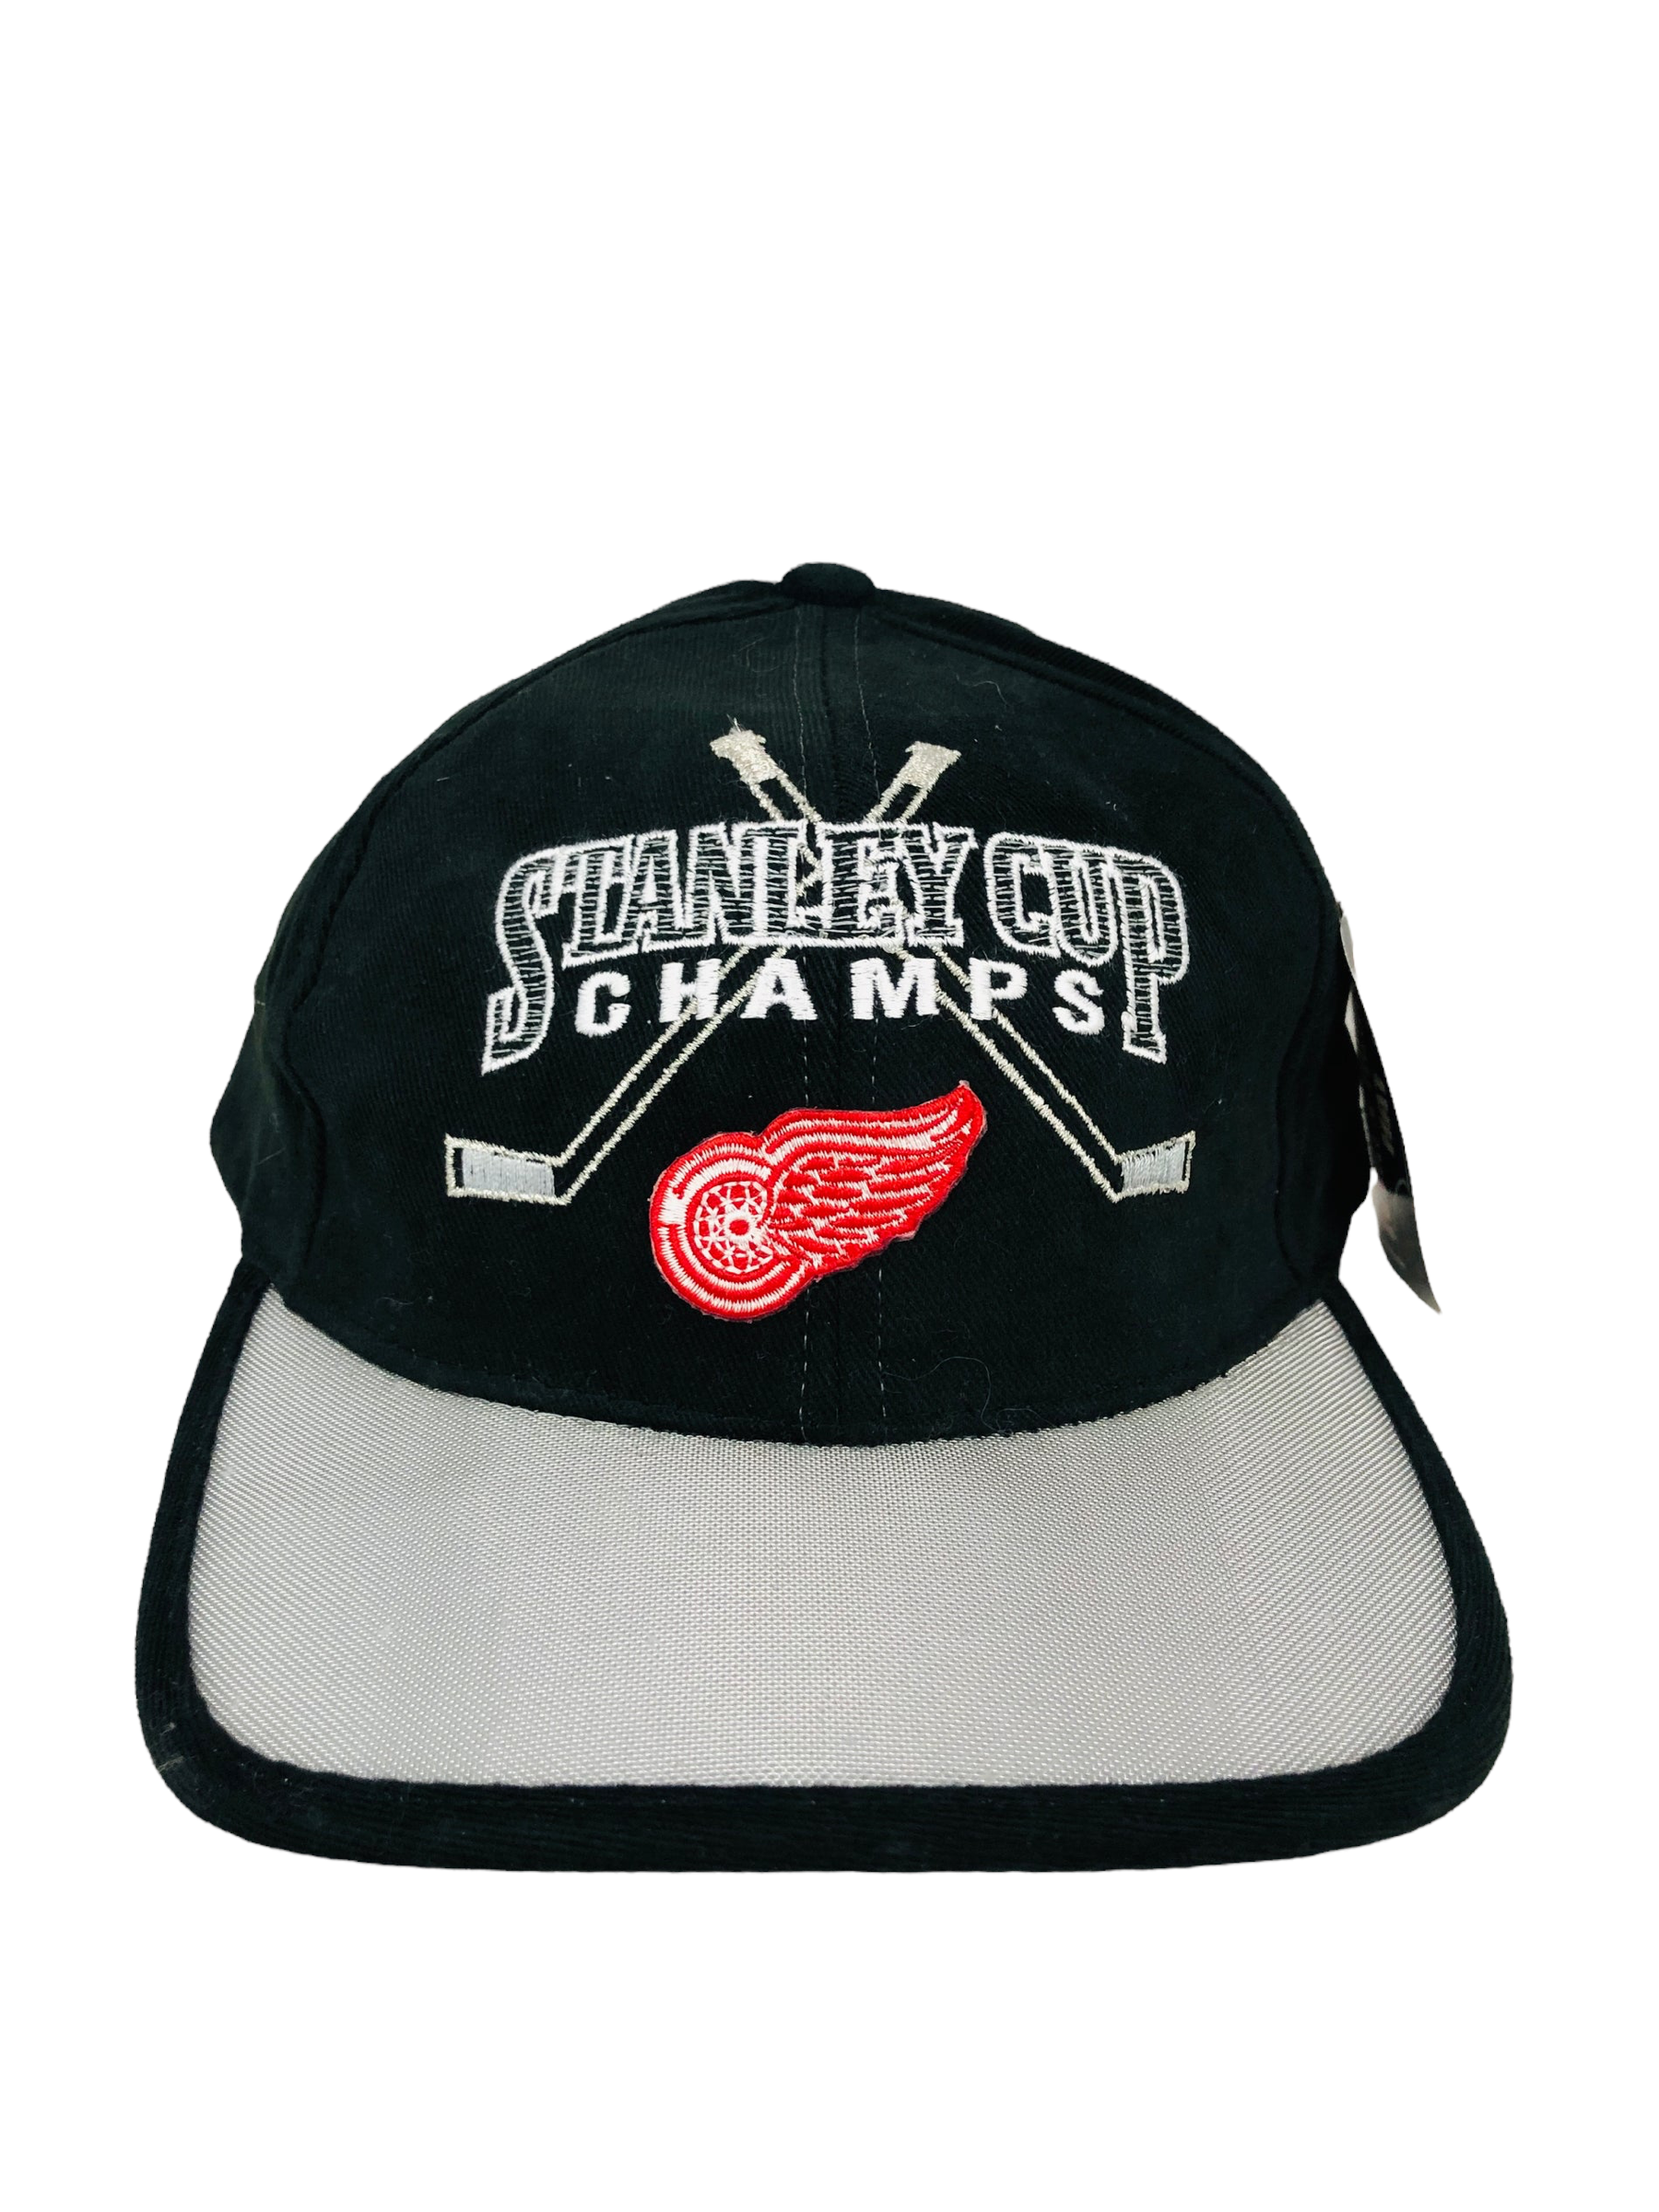 Vintage 1990's Detroit Red Wings Logo Athletic Brand NHL Hockey Snapback  Cap Hat